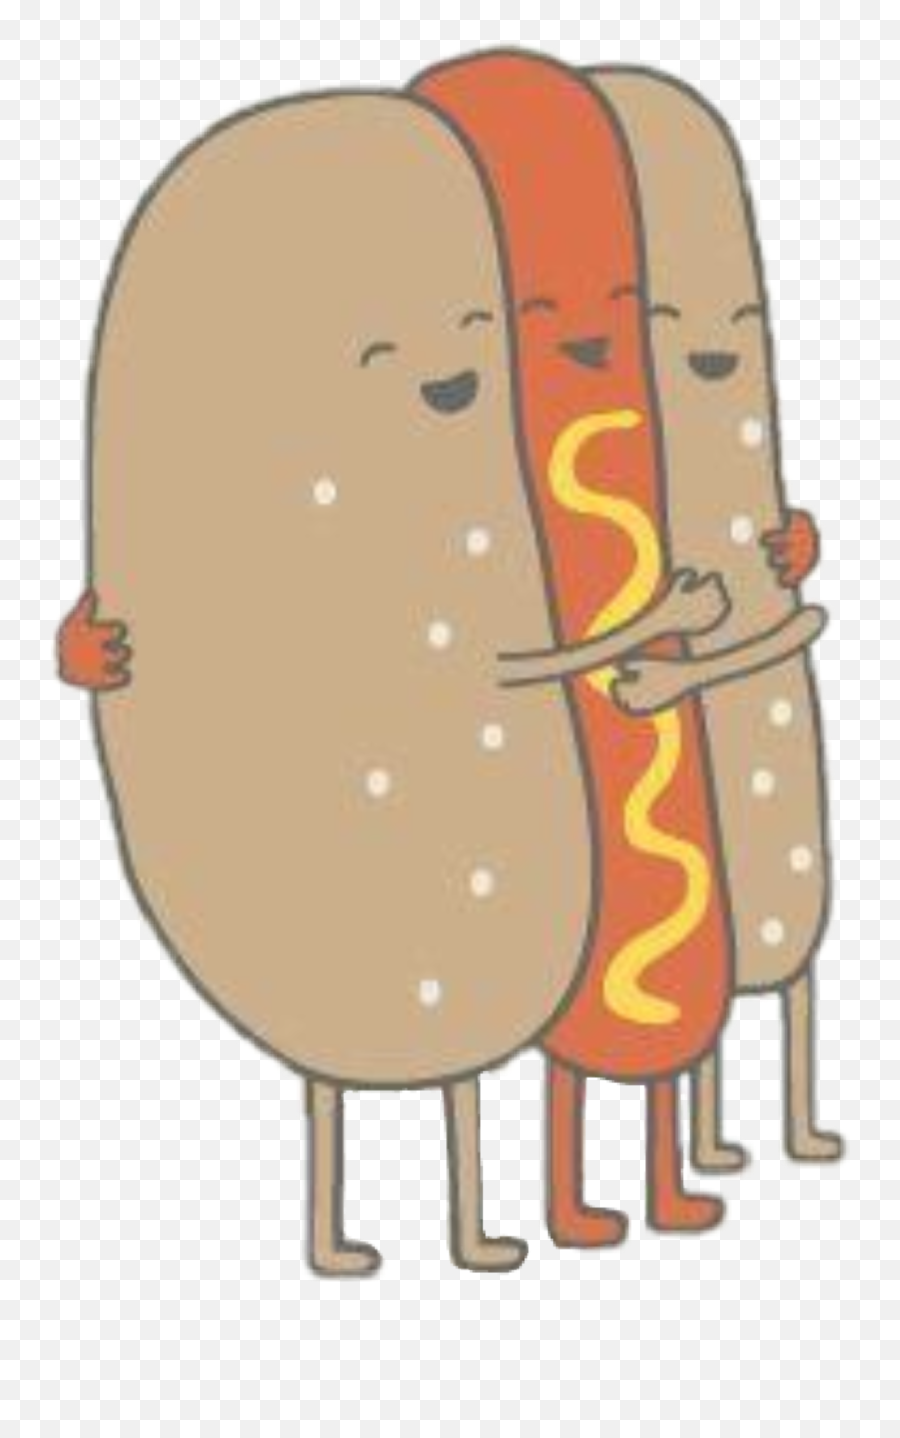 Hot Dog Sticker Challenge On Picsart - Dodger Dog Emoji,Hot Dog Emoticon